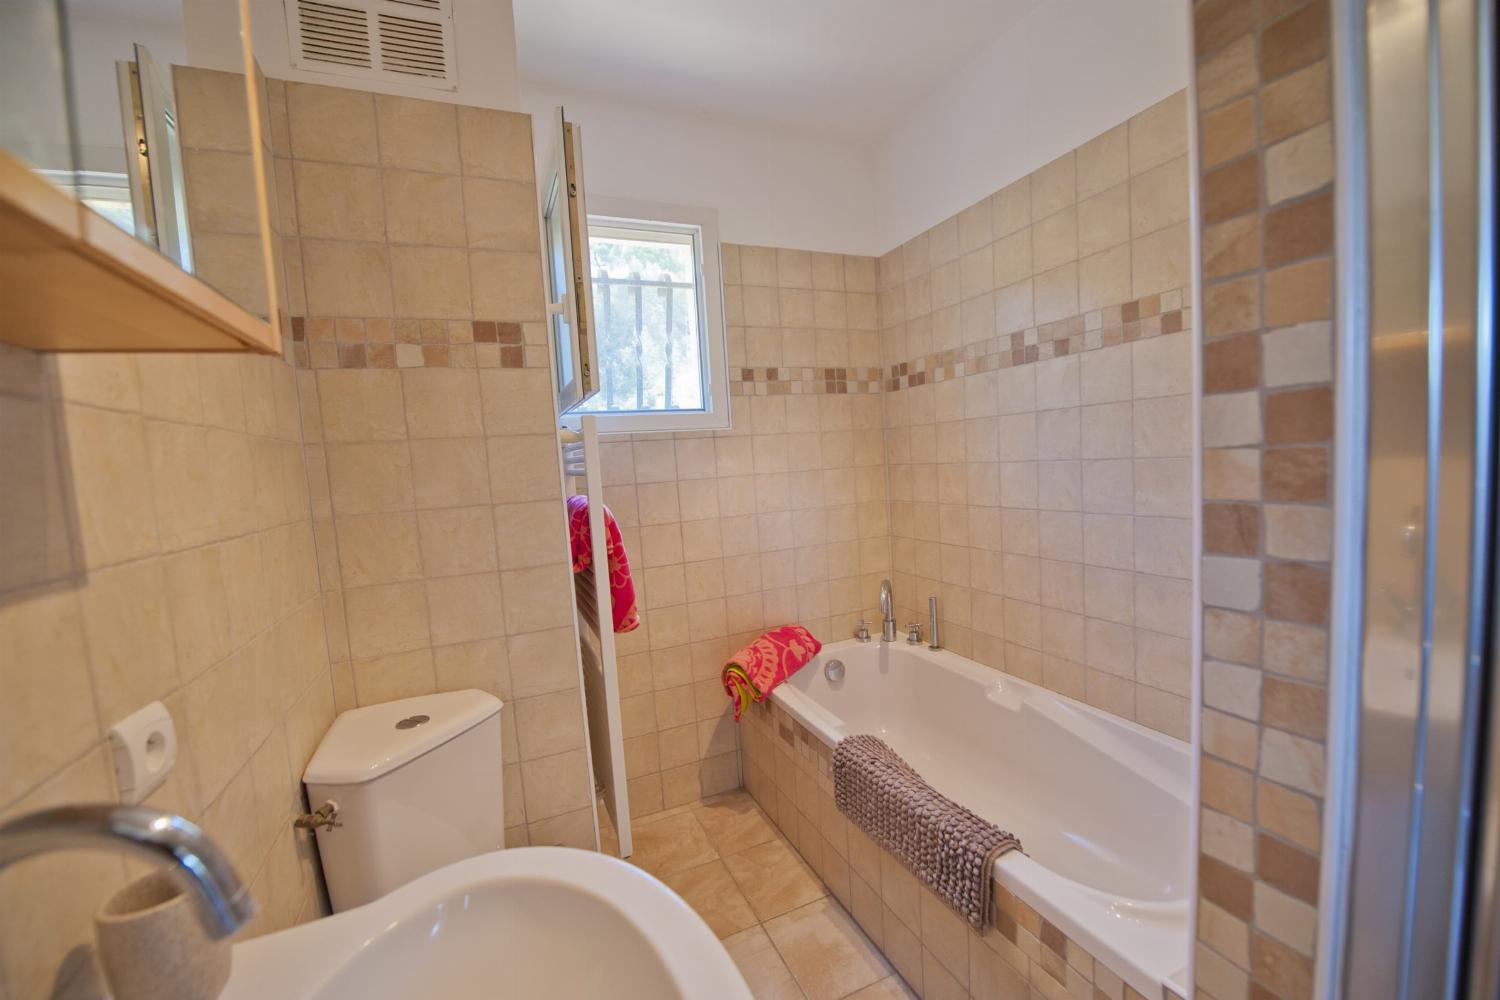 Salle de bain | Villa de vacances dans le sud de la France